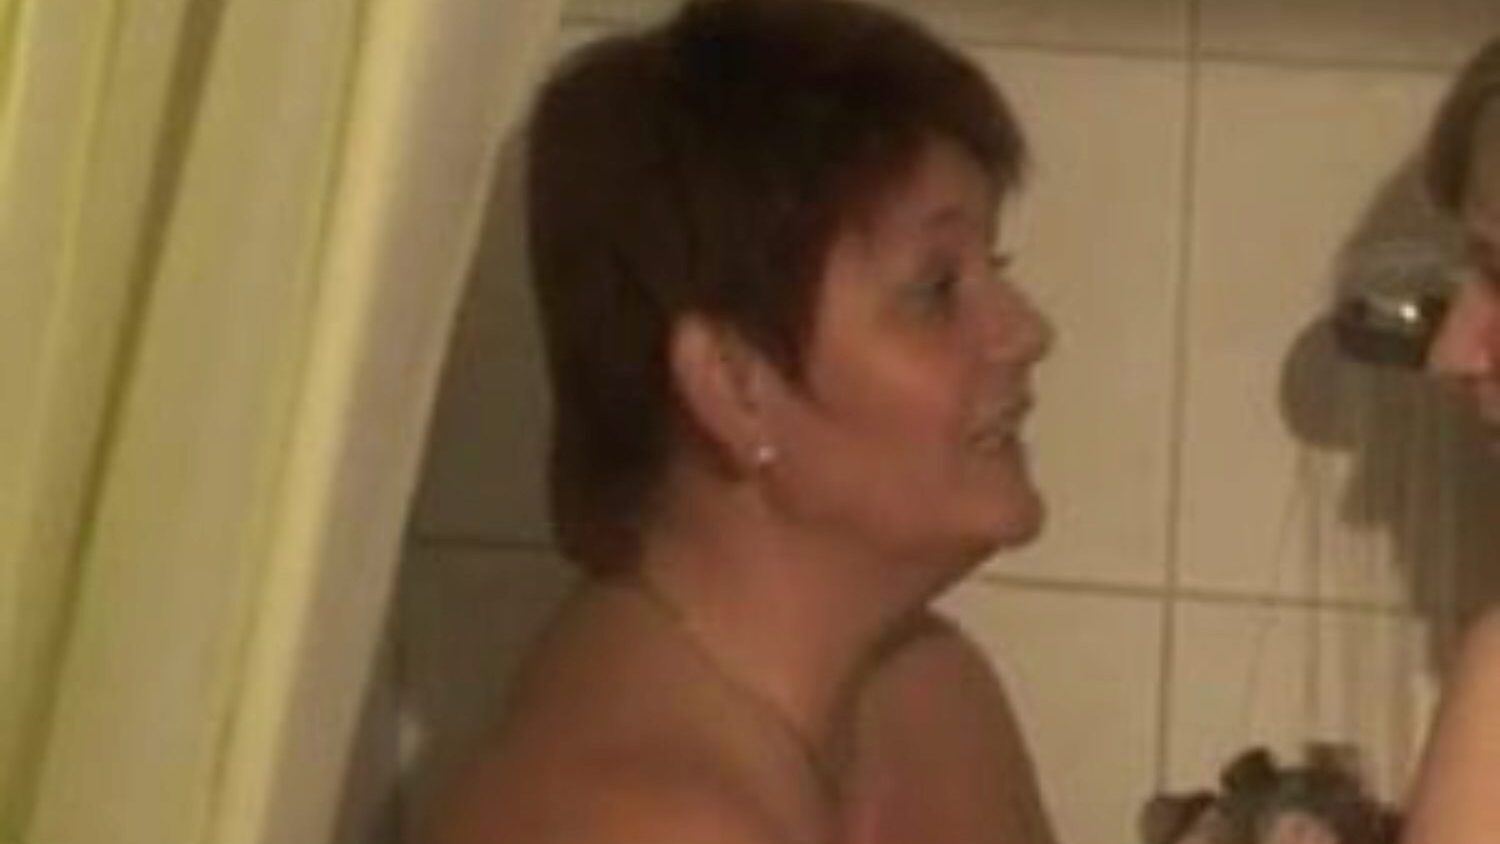 deux bi-filles se douchant: vidéo porno lesbienne gratuite 76 - xhamster regarde 2 scènes de film d'amour de tube de douche bi-filles gratuitement pour tous sur xhamster, avec la collection dominatrice de lesbiennes allemandes, mère j'aimerais baiser et pornographie bbw séquences de films